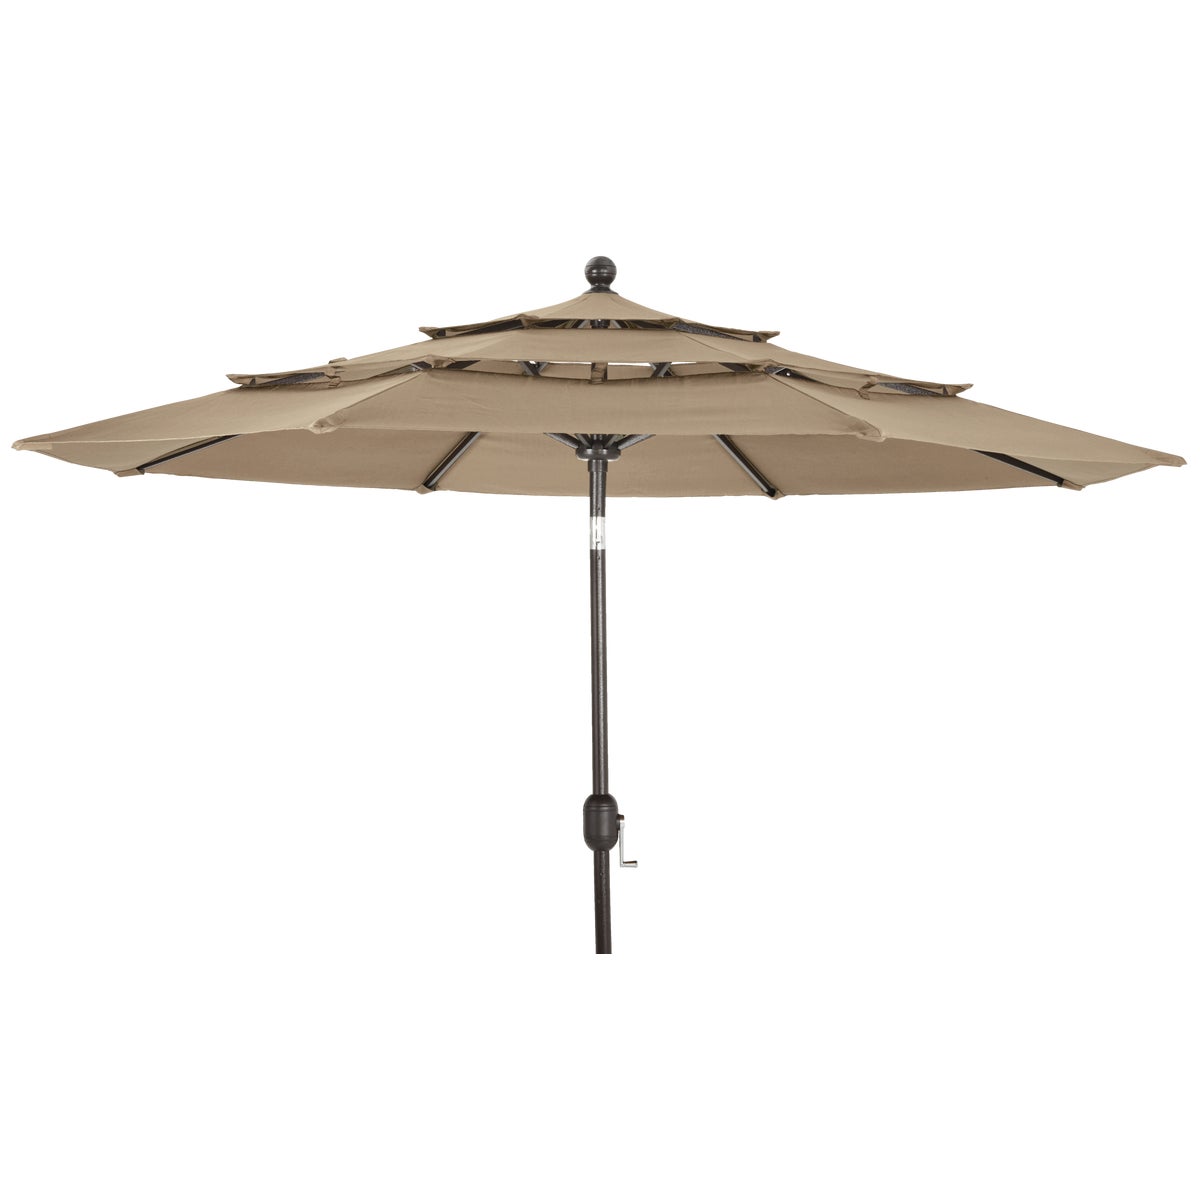 Outdoor Expressions 9 Ft. 3-Tier Tilt/Crank Tan Patio Umbrella